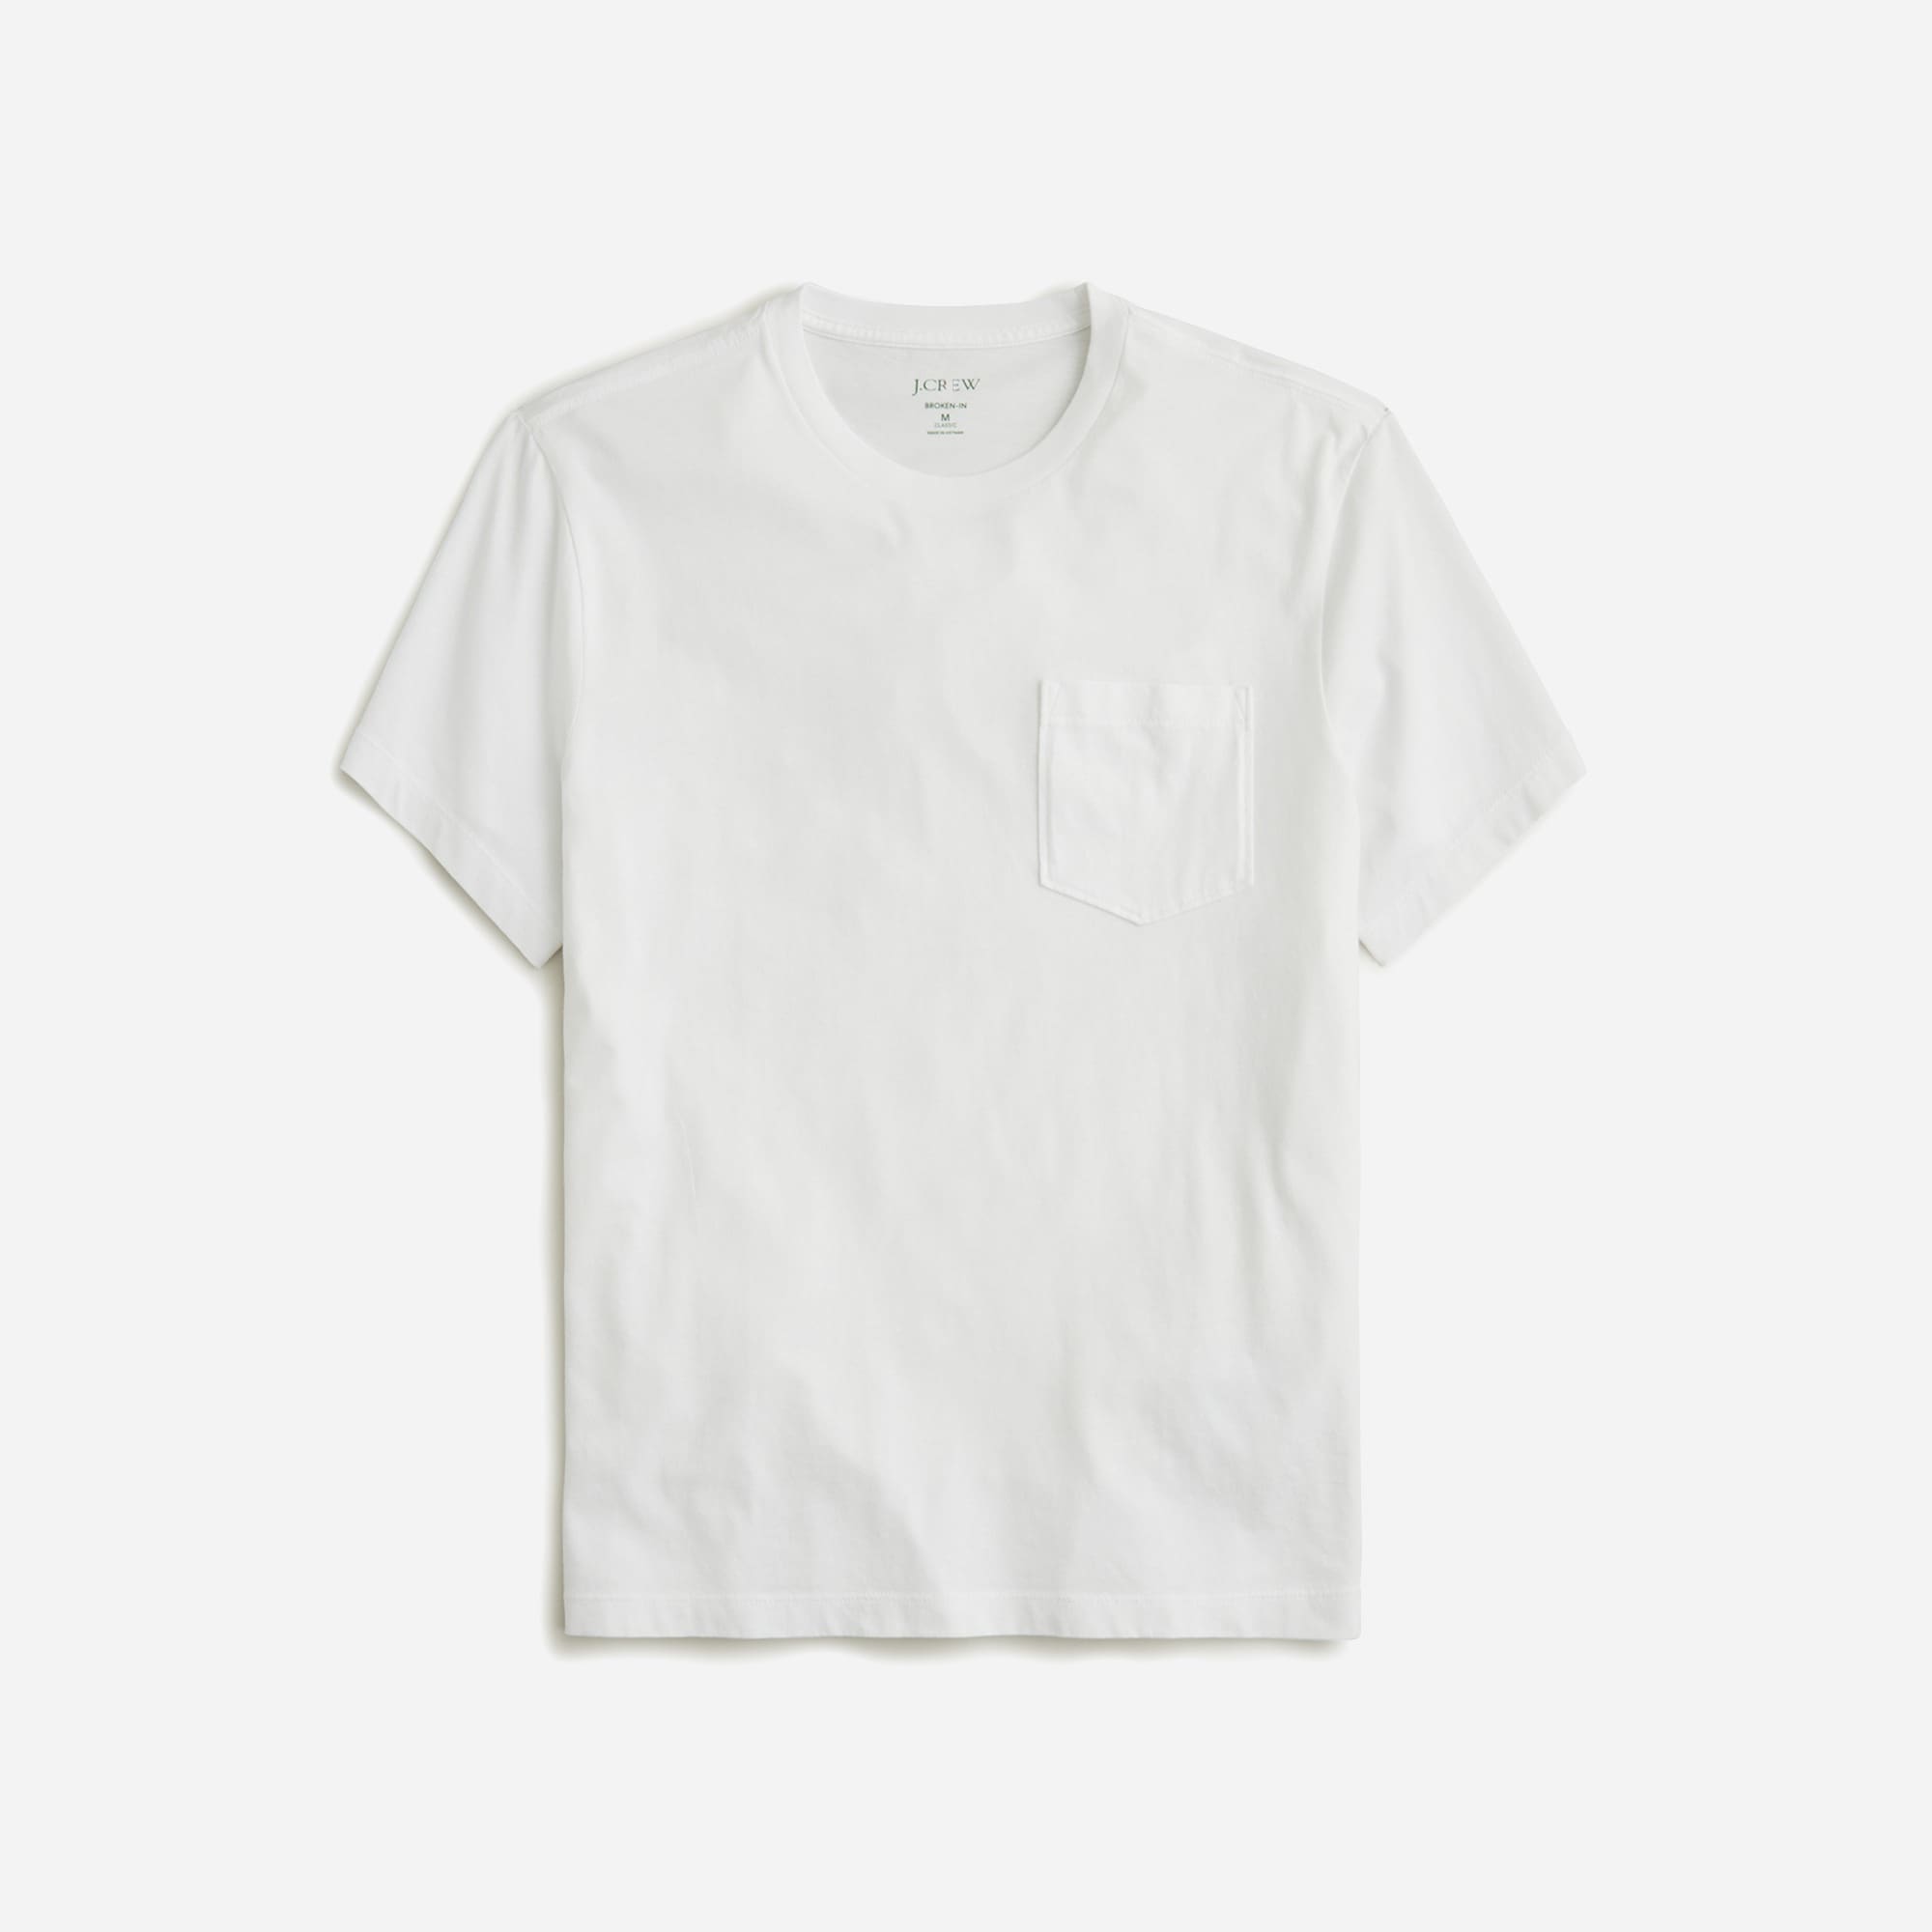  Tall Broken-in pocket T-shirt